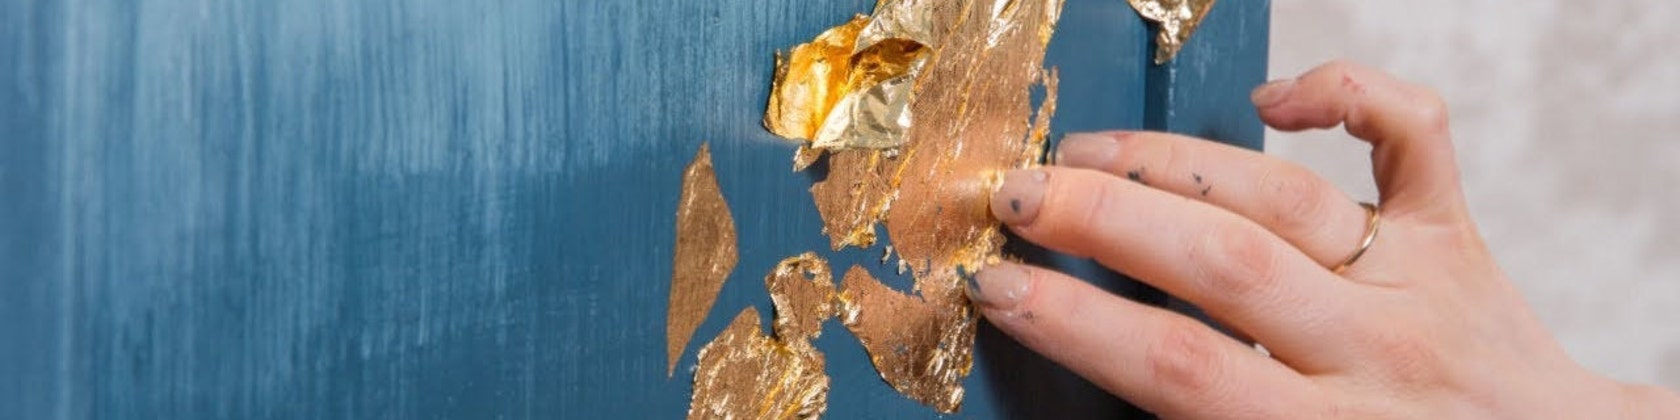 23.5K Gold Flakes (Large) — L.A. Gold Leaf Wholesaler U.S.